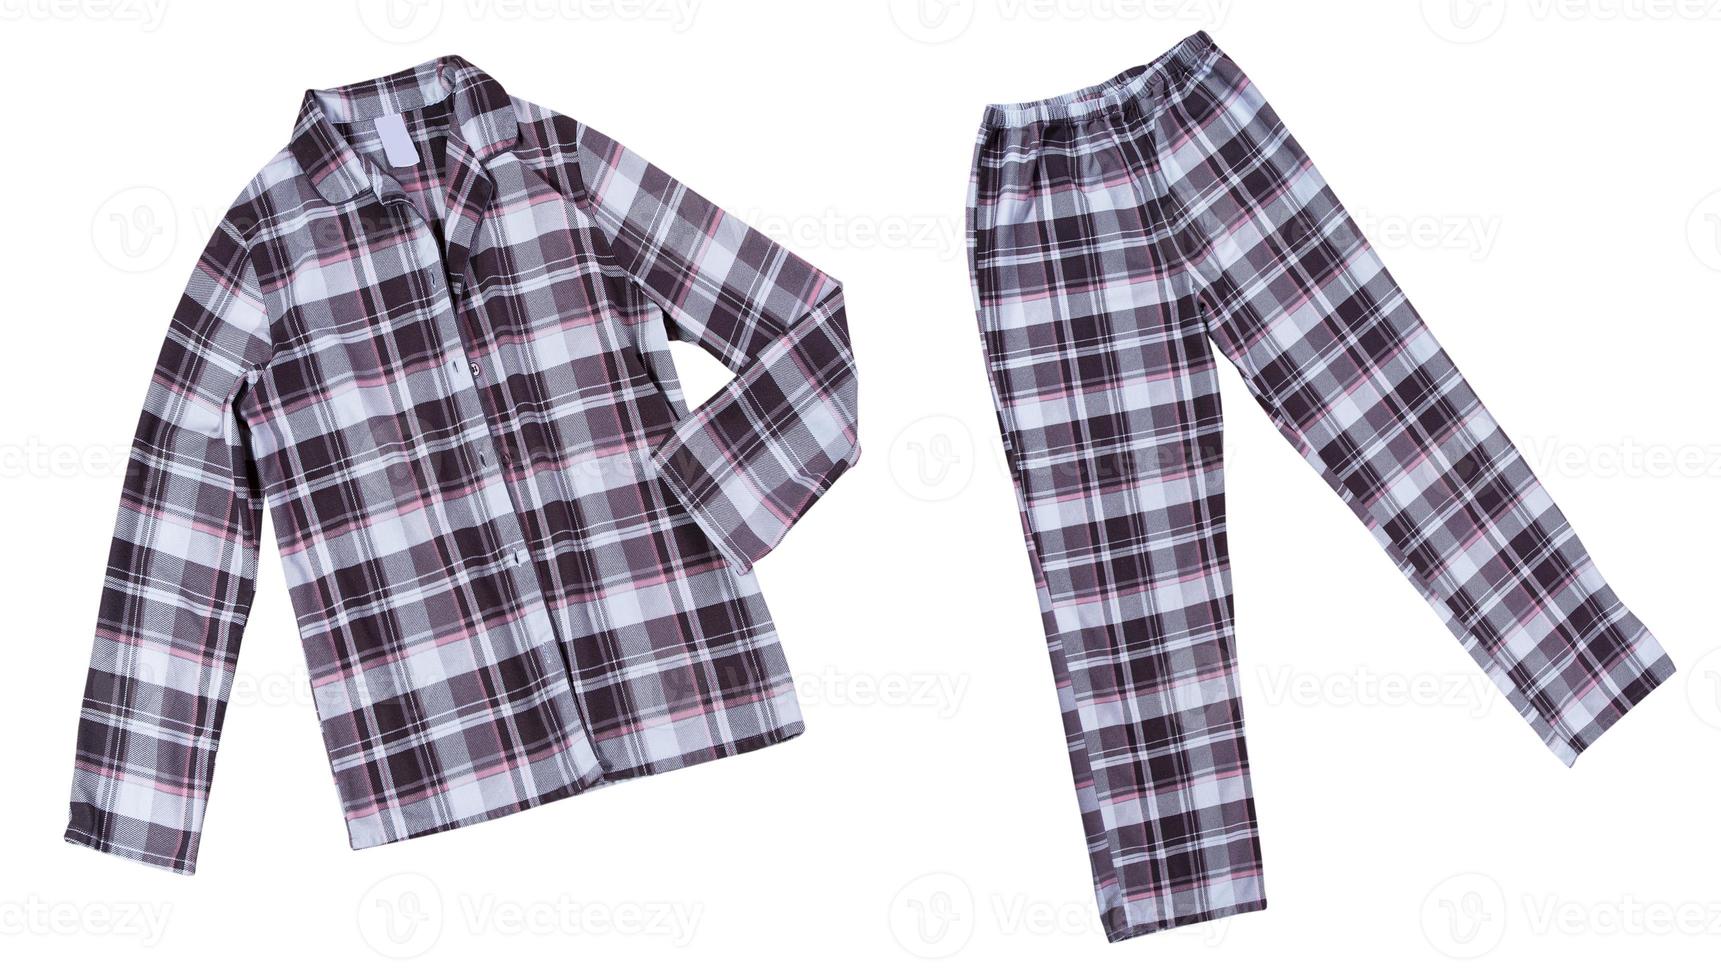 Sleep wear pajamas - shirt and pants isolated on white background. Sleepwear set photo